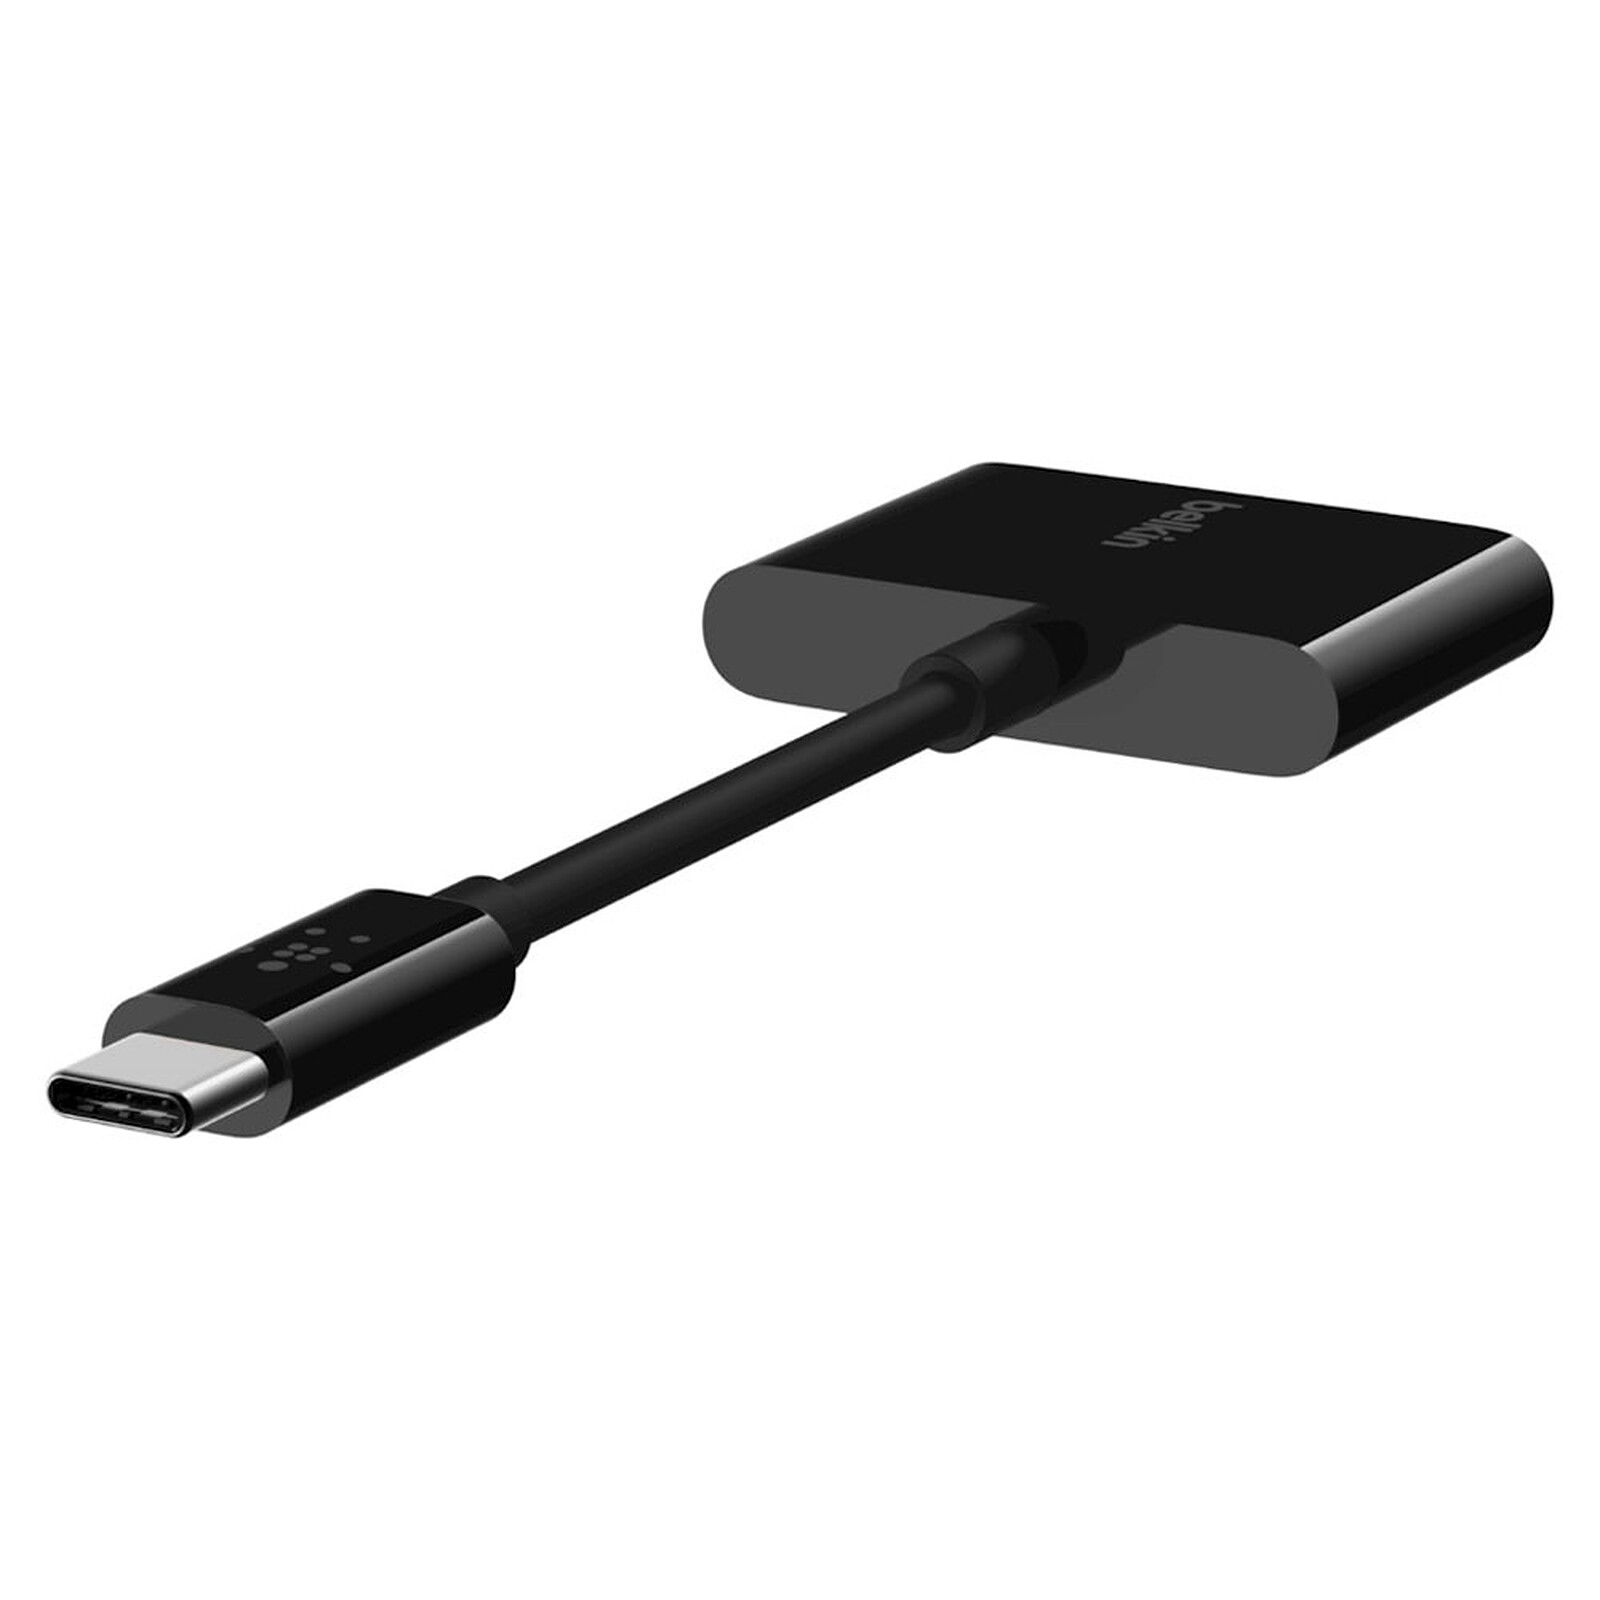 Adaptador de carga USB-C a Jack y USB-C de Belkin (negro) - Cable